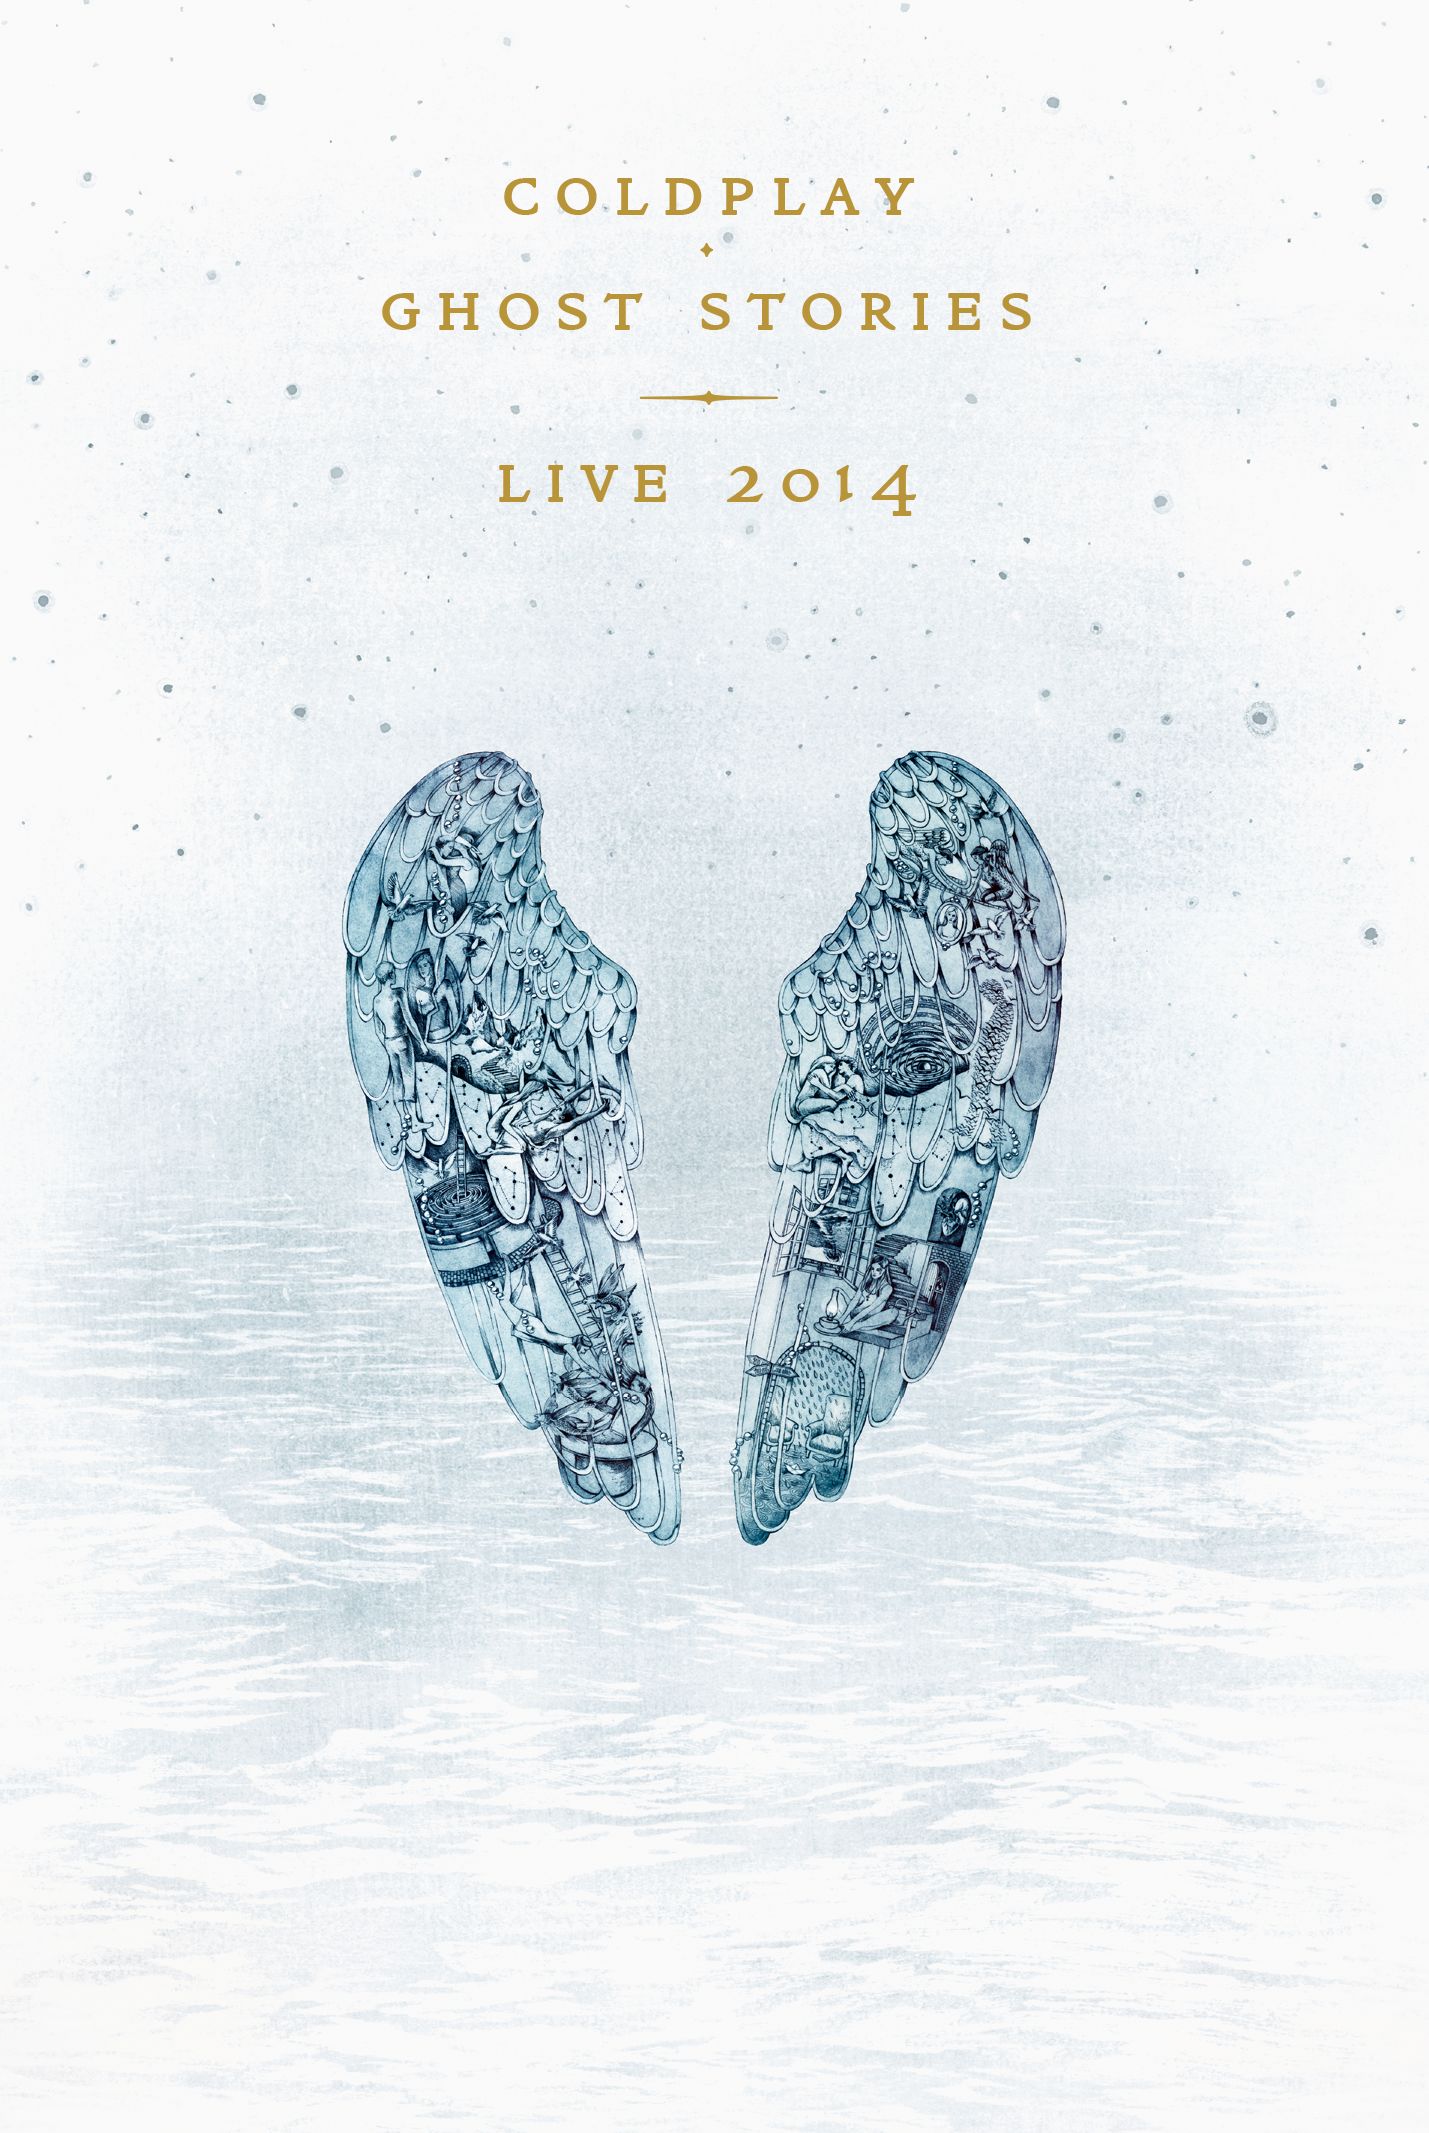 酷玩樂團 / 鬼故事 現場影音實錄 DVD+CD(COLDPLAY / GHOST STORIES LIVE 2014(DVD+CD))